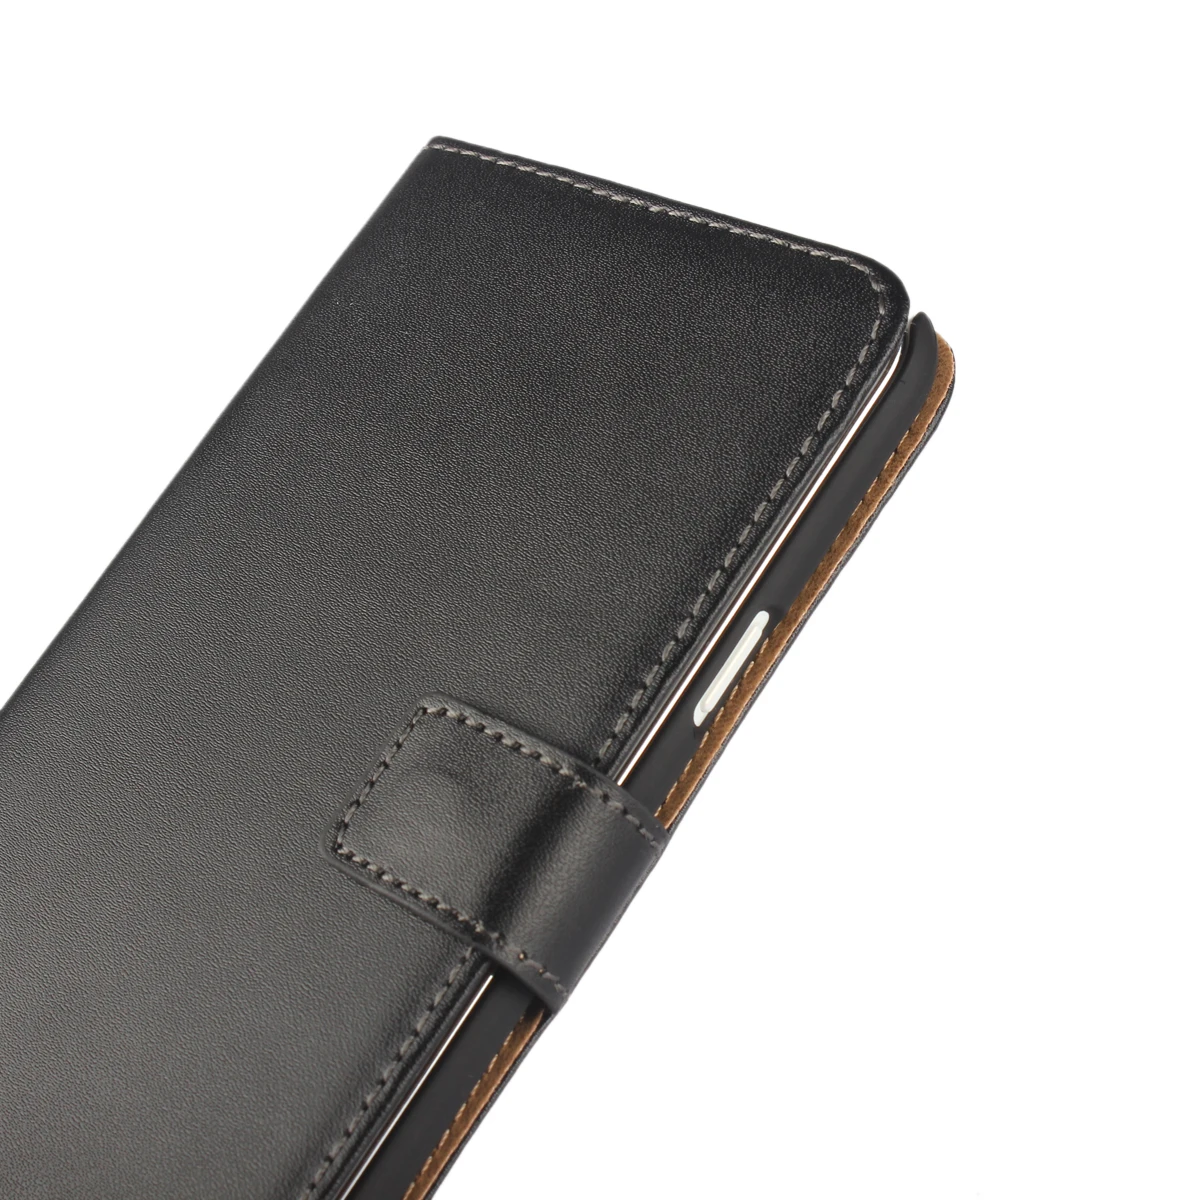 Роскошный чехол-бумажник из искусственной кожи премиум класса для samsung Galaxy J7 Neo/NXT/Core/J701F J701M держатель для карт чехол для телефона GG